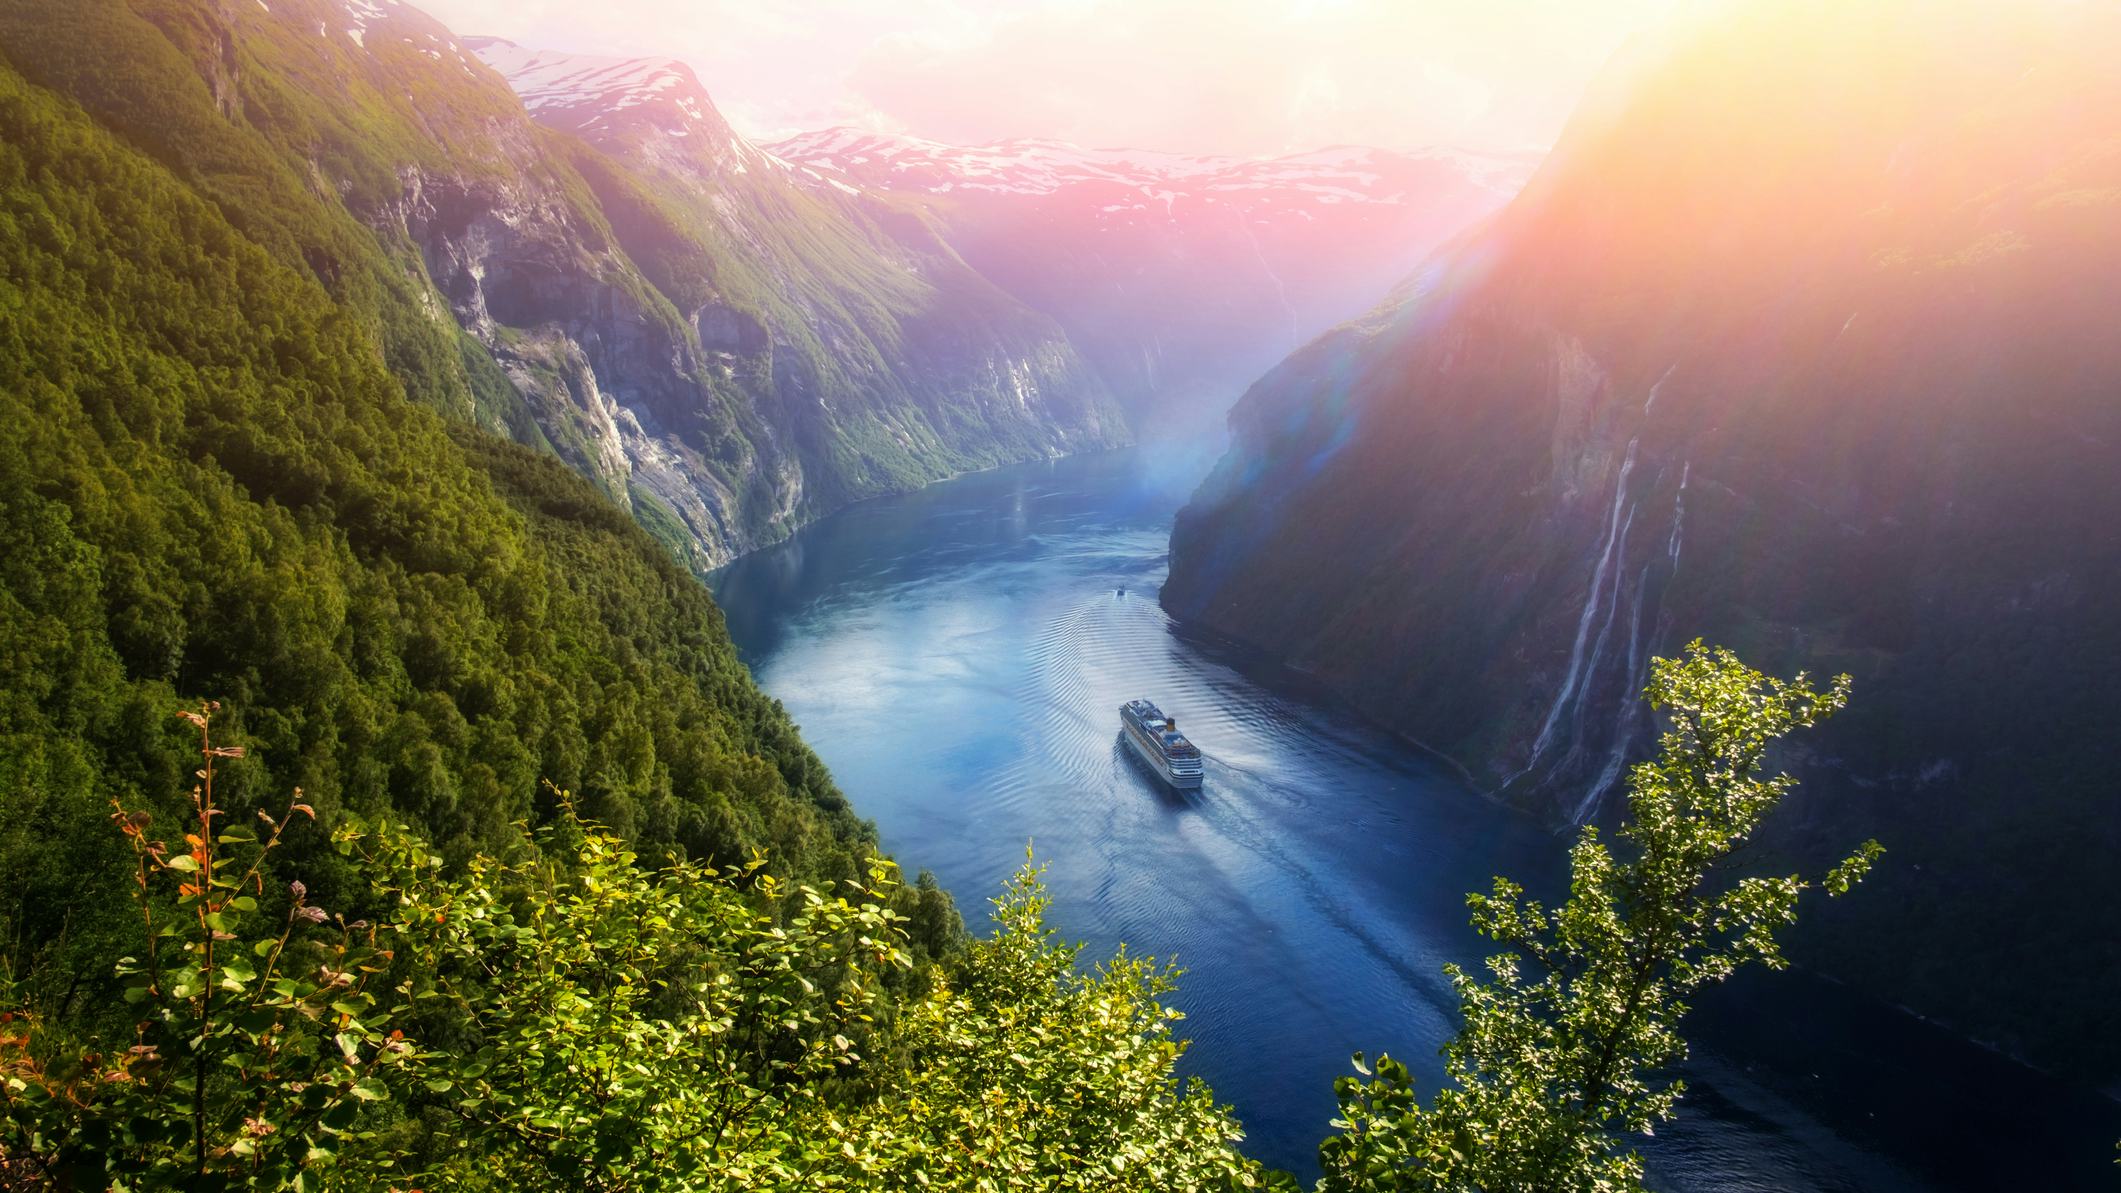 Cruise through Norway, Europe